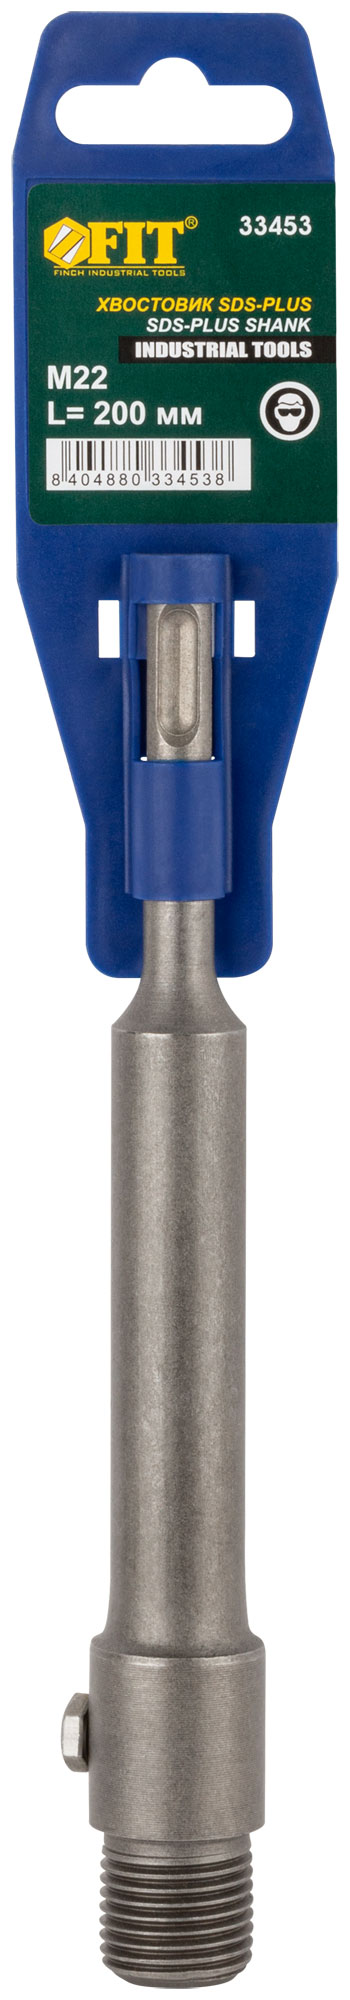 Удлинитель с хвостовиком SDS-PLUS для коронок по бетону, резьба М22, длина 200 мм